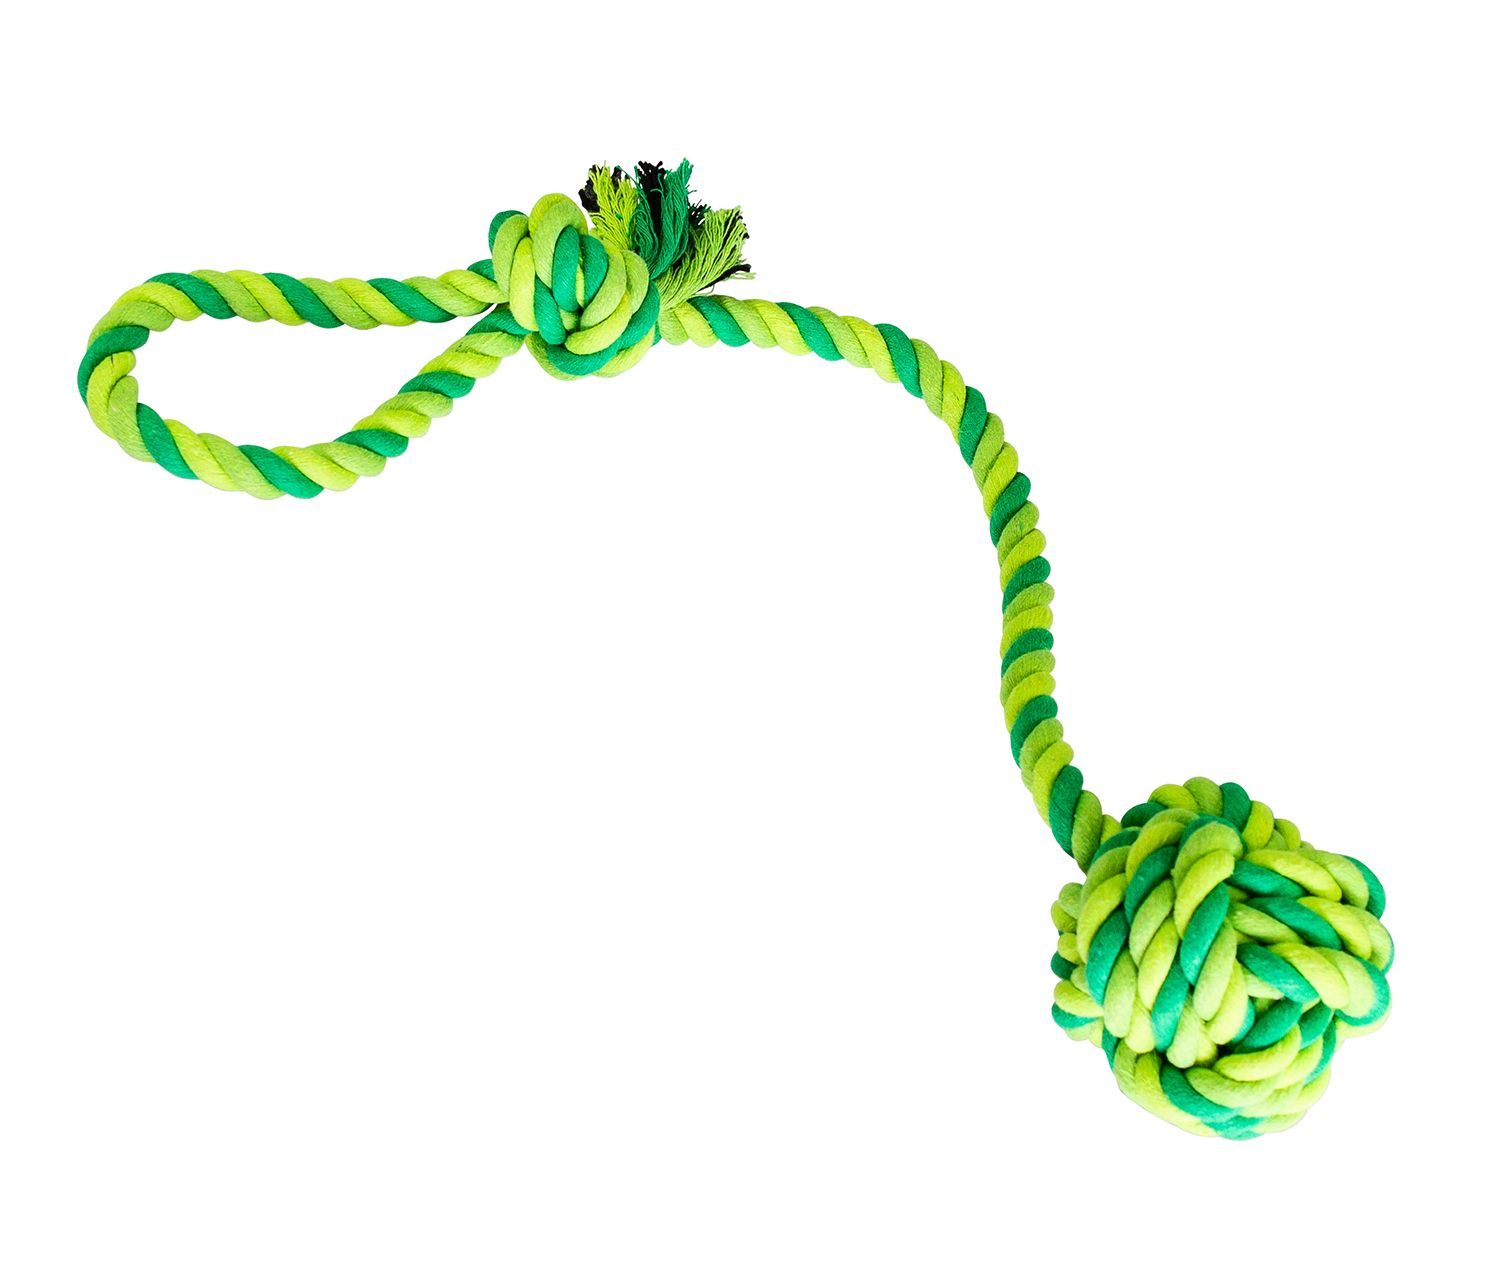 Přetahovadlo HipHop bavlněný míč 9 cm, 58 cm / 300 g sv.zelená, tm.zelená, khaki HipHop Dog